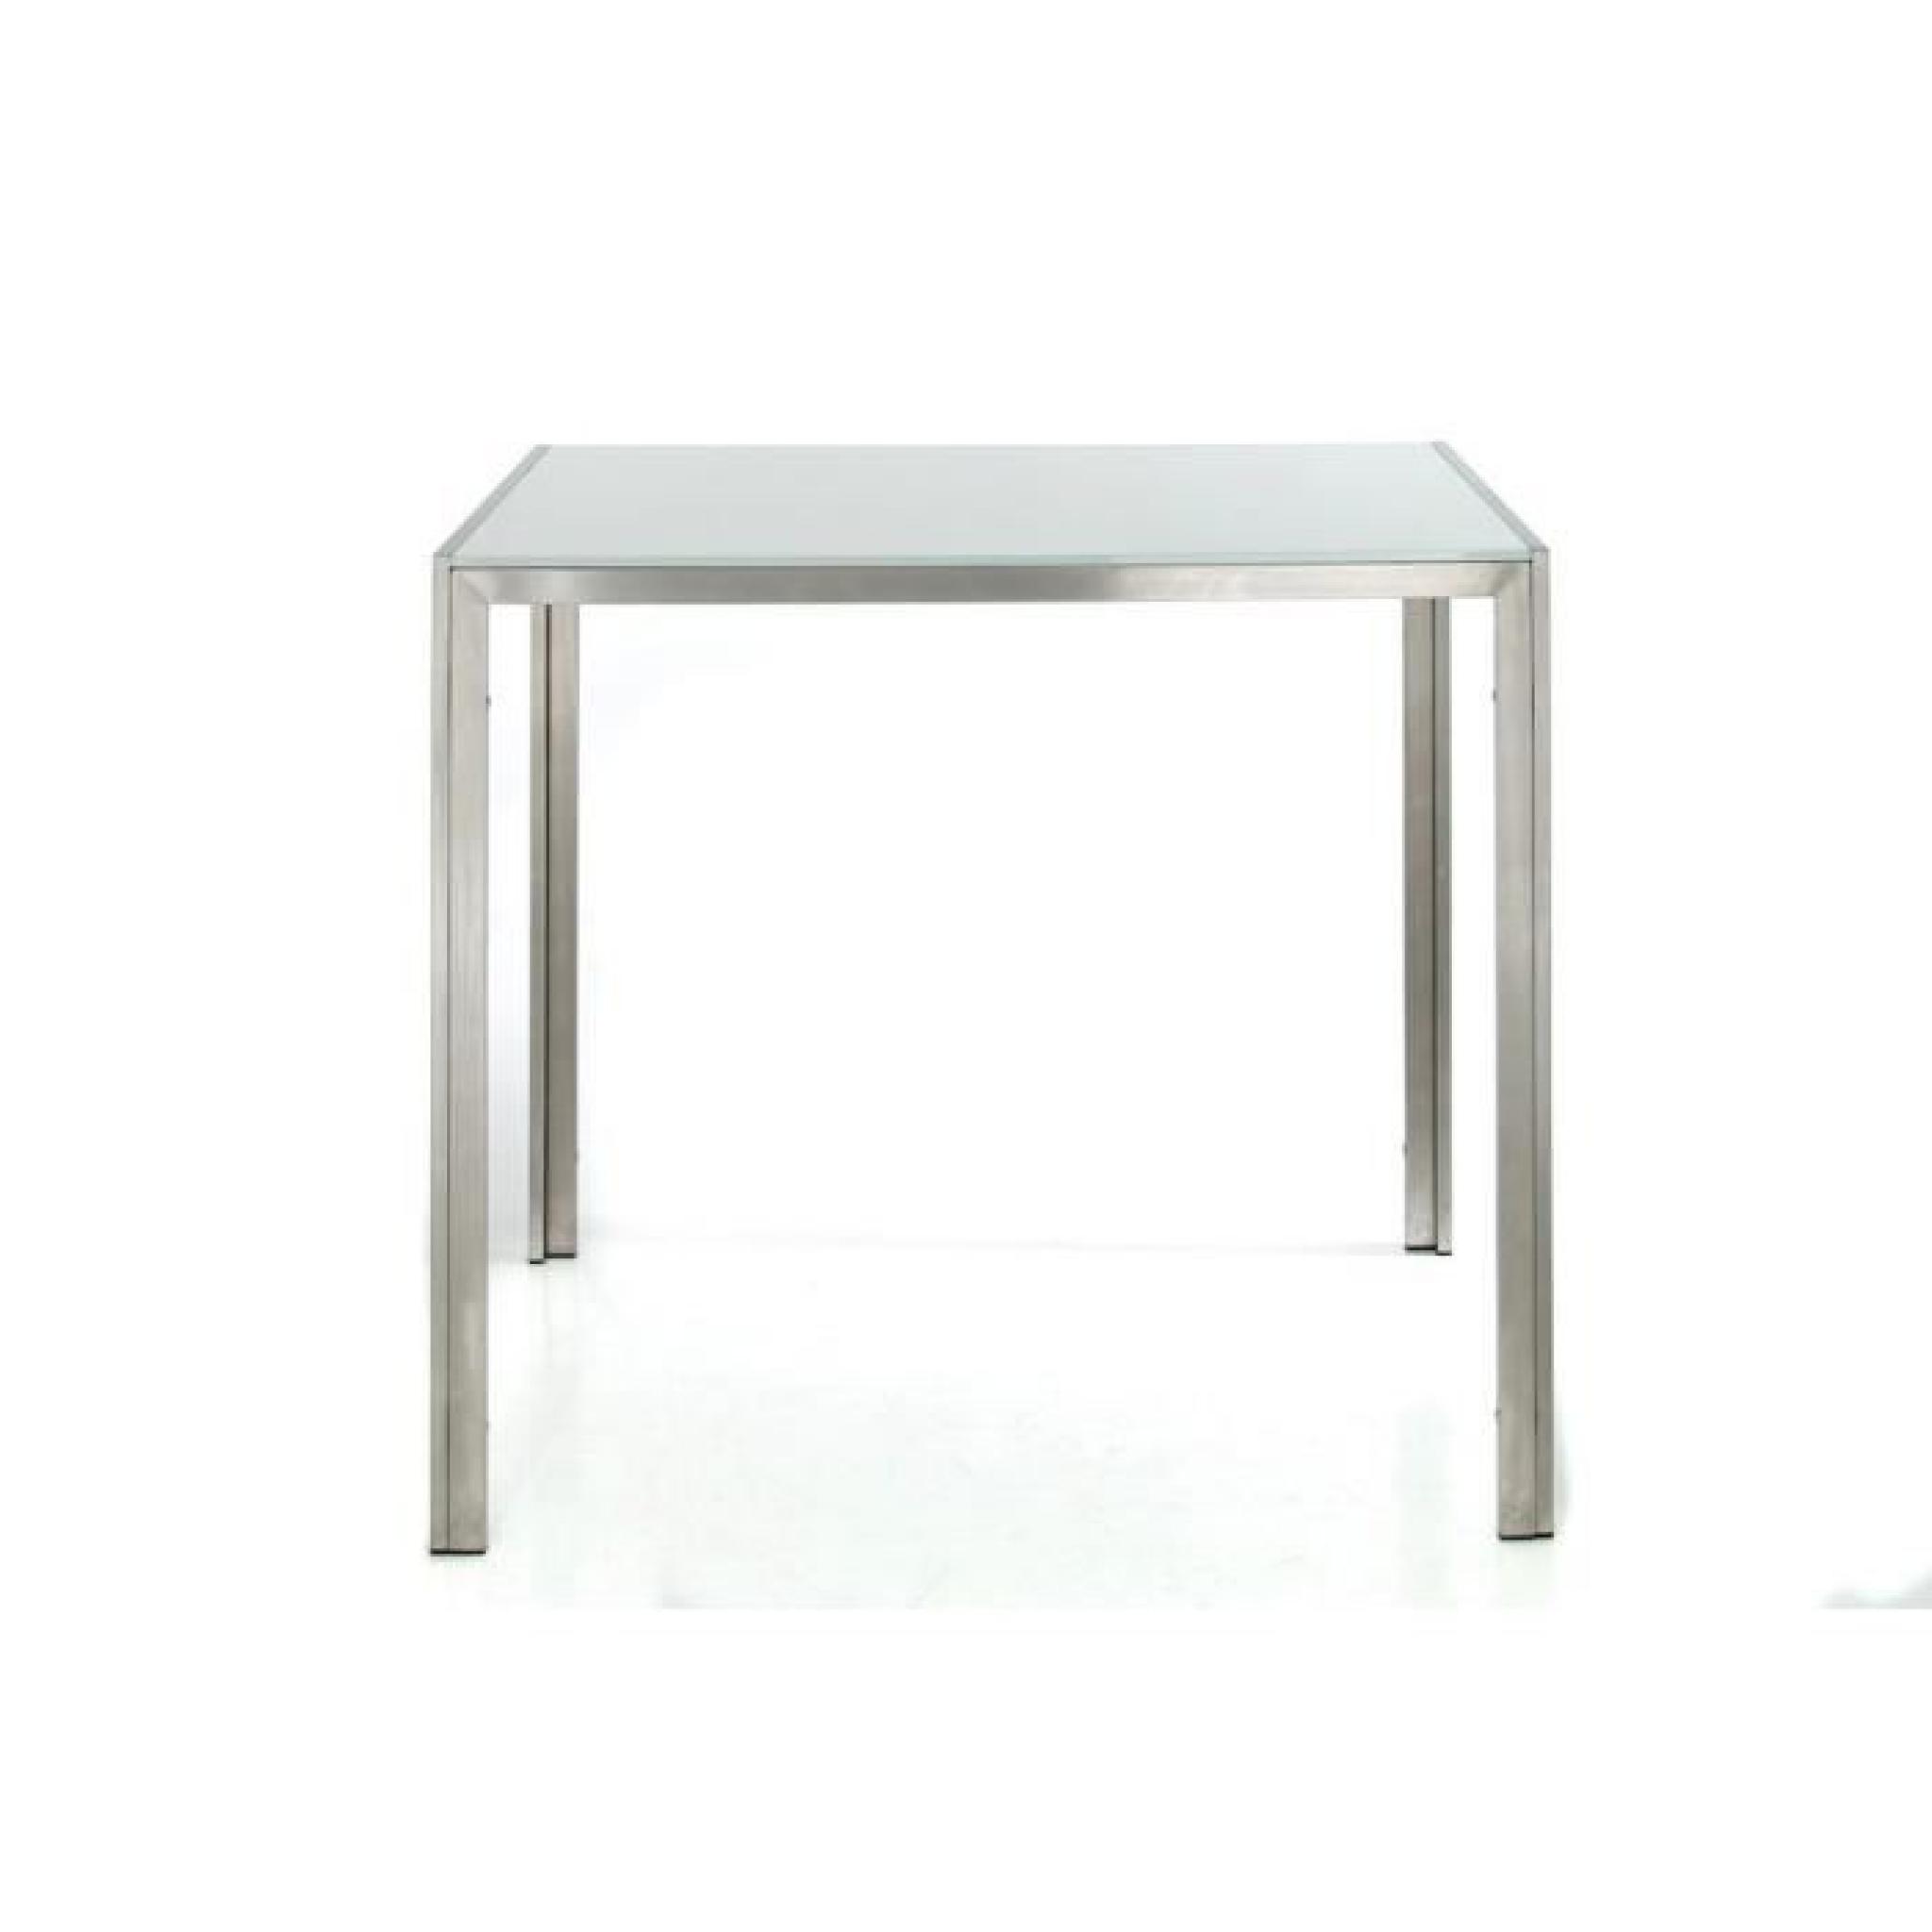 CLP Table haute massive SALVADOR, avec plateau en verre de 5 mm, acier 100% inoxydable, hauteur 110 cm, largeur 120 cm pas cher